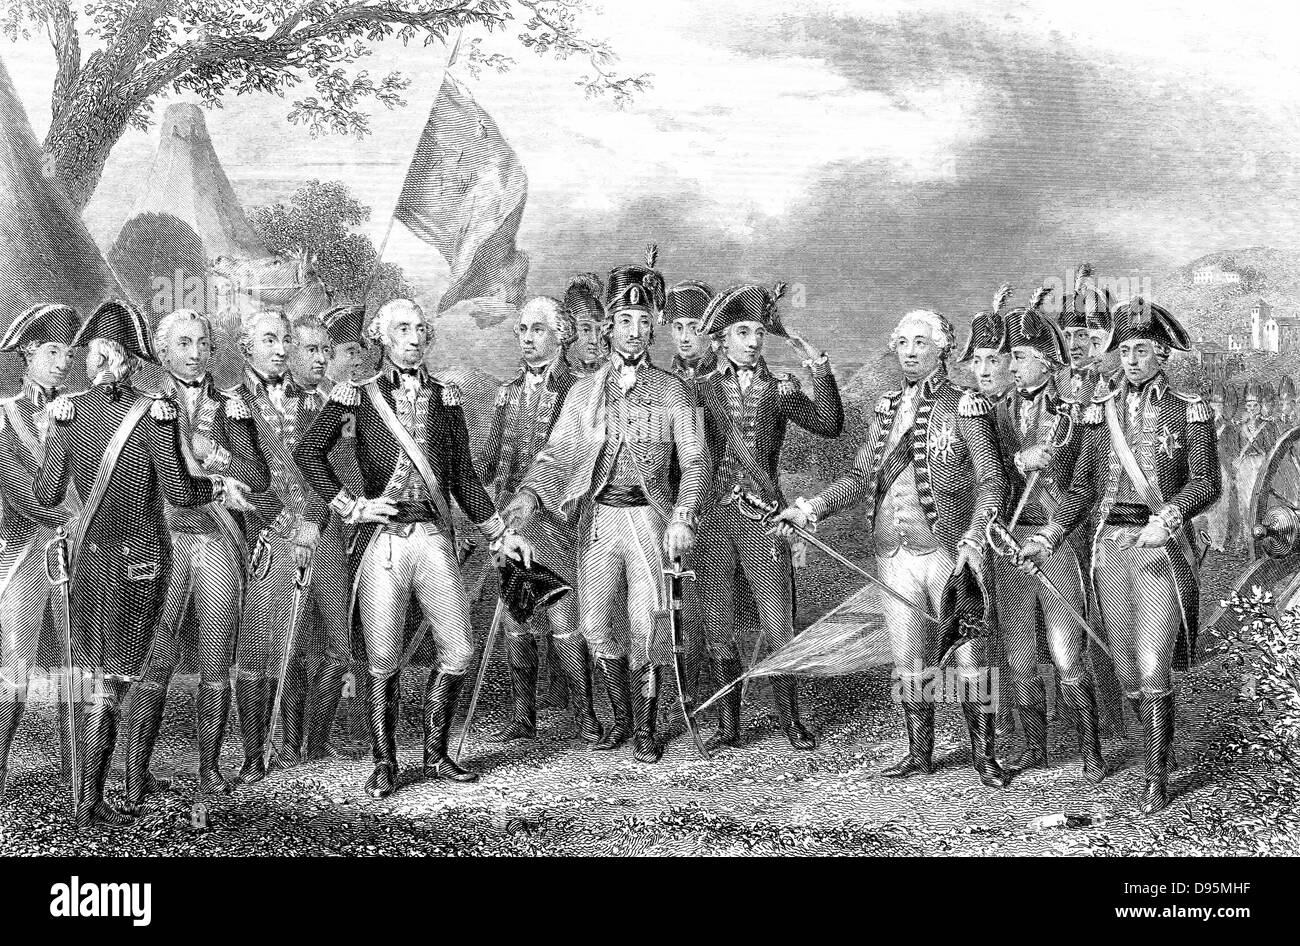 Amerikanischer Unabhängigkeitskrieg: Niederlage der Briten bei Yorktown, Virginia 1781. Charles, Marquis von Cornwallis (1738-1805) O'Hara und Chewton ihre Schwerter Hingabe an Washington. Gravur. Stockfoto